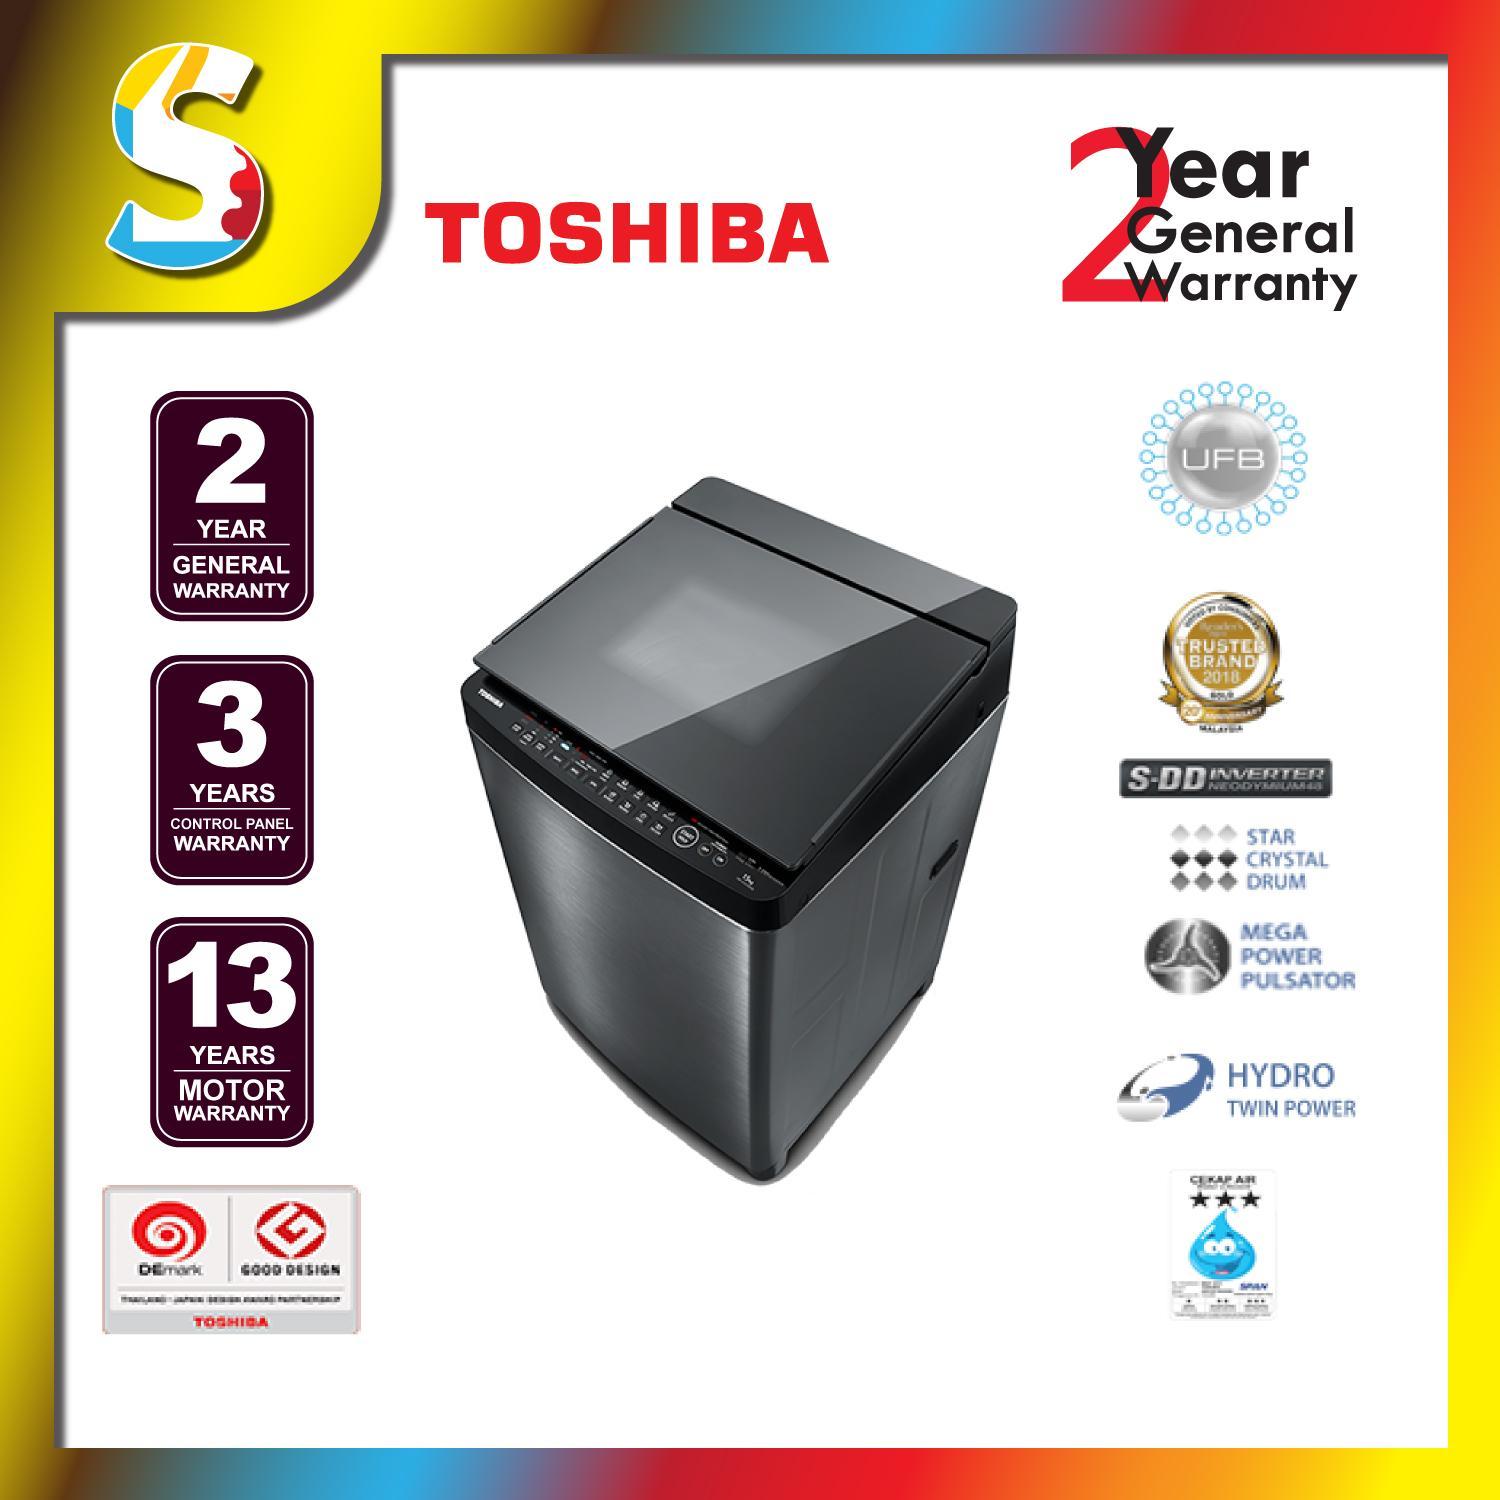 Máy giặt Toshiba S DD inverter sở hữu nhiều công nghệ tiên tiến